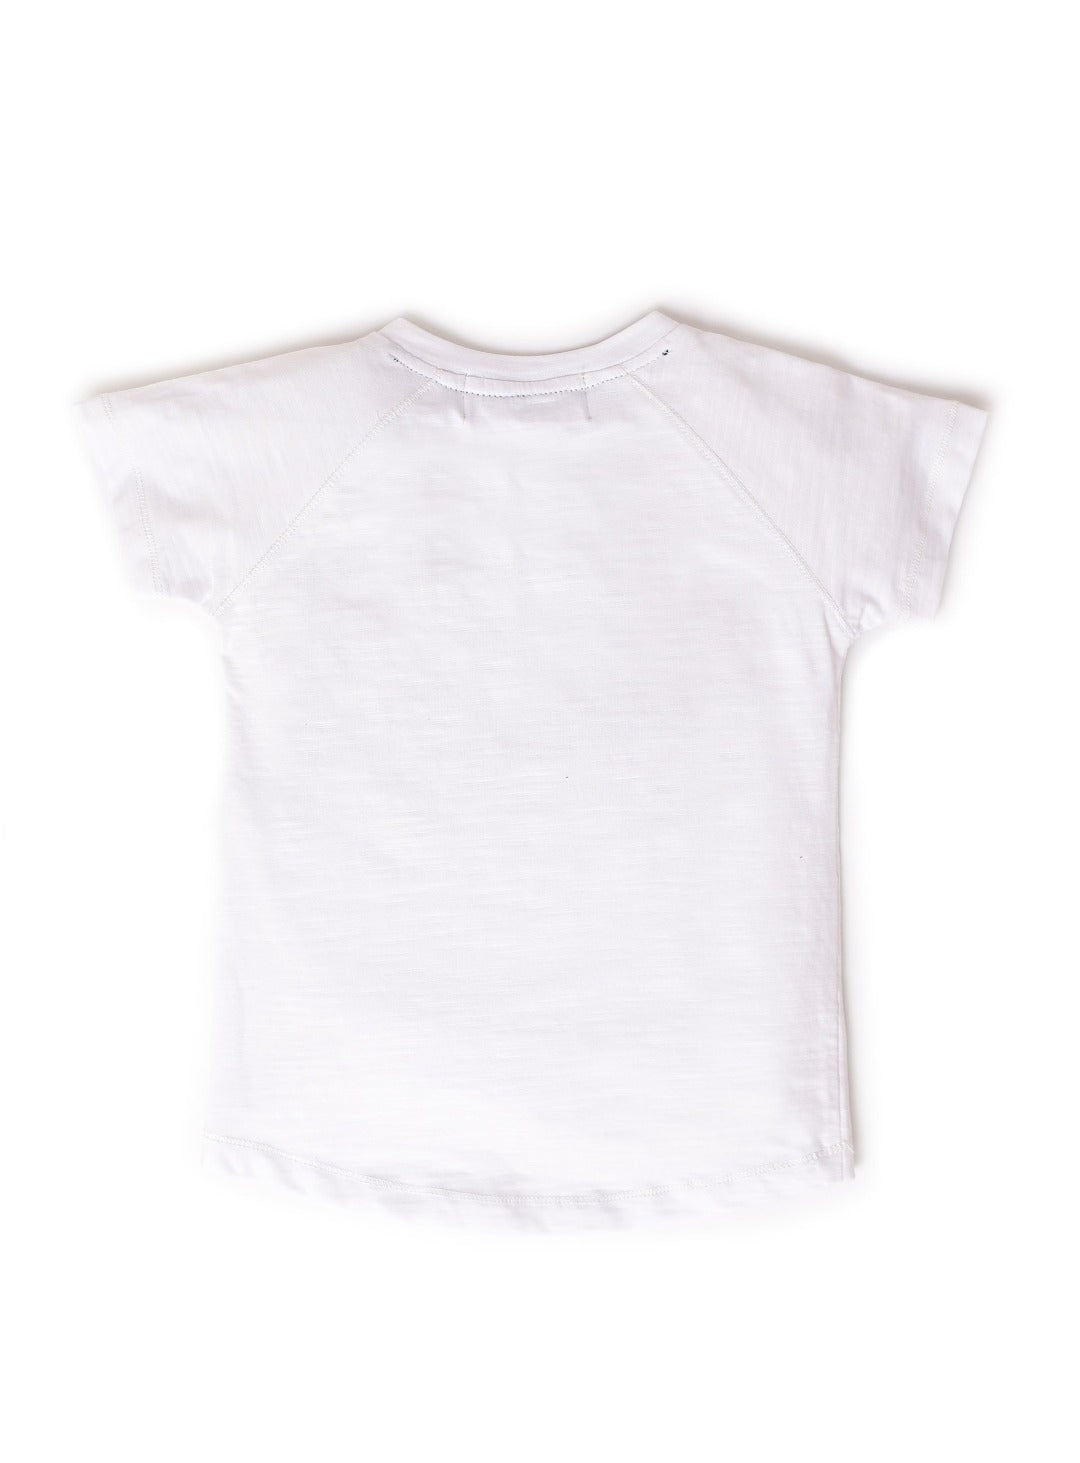 pearl white v-neck t-shirt